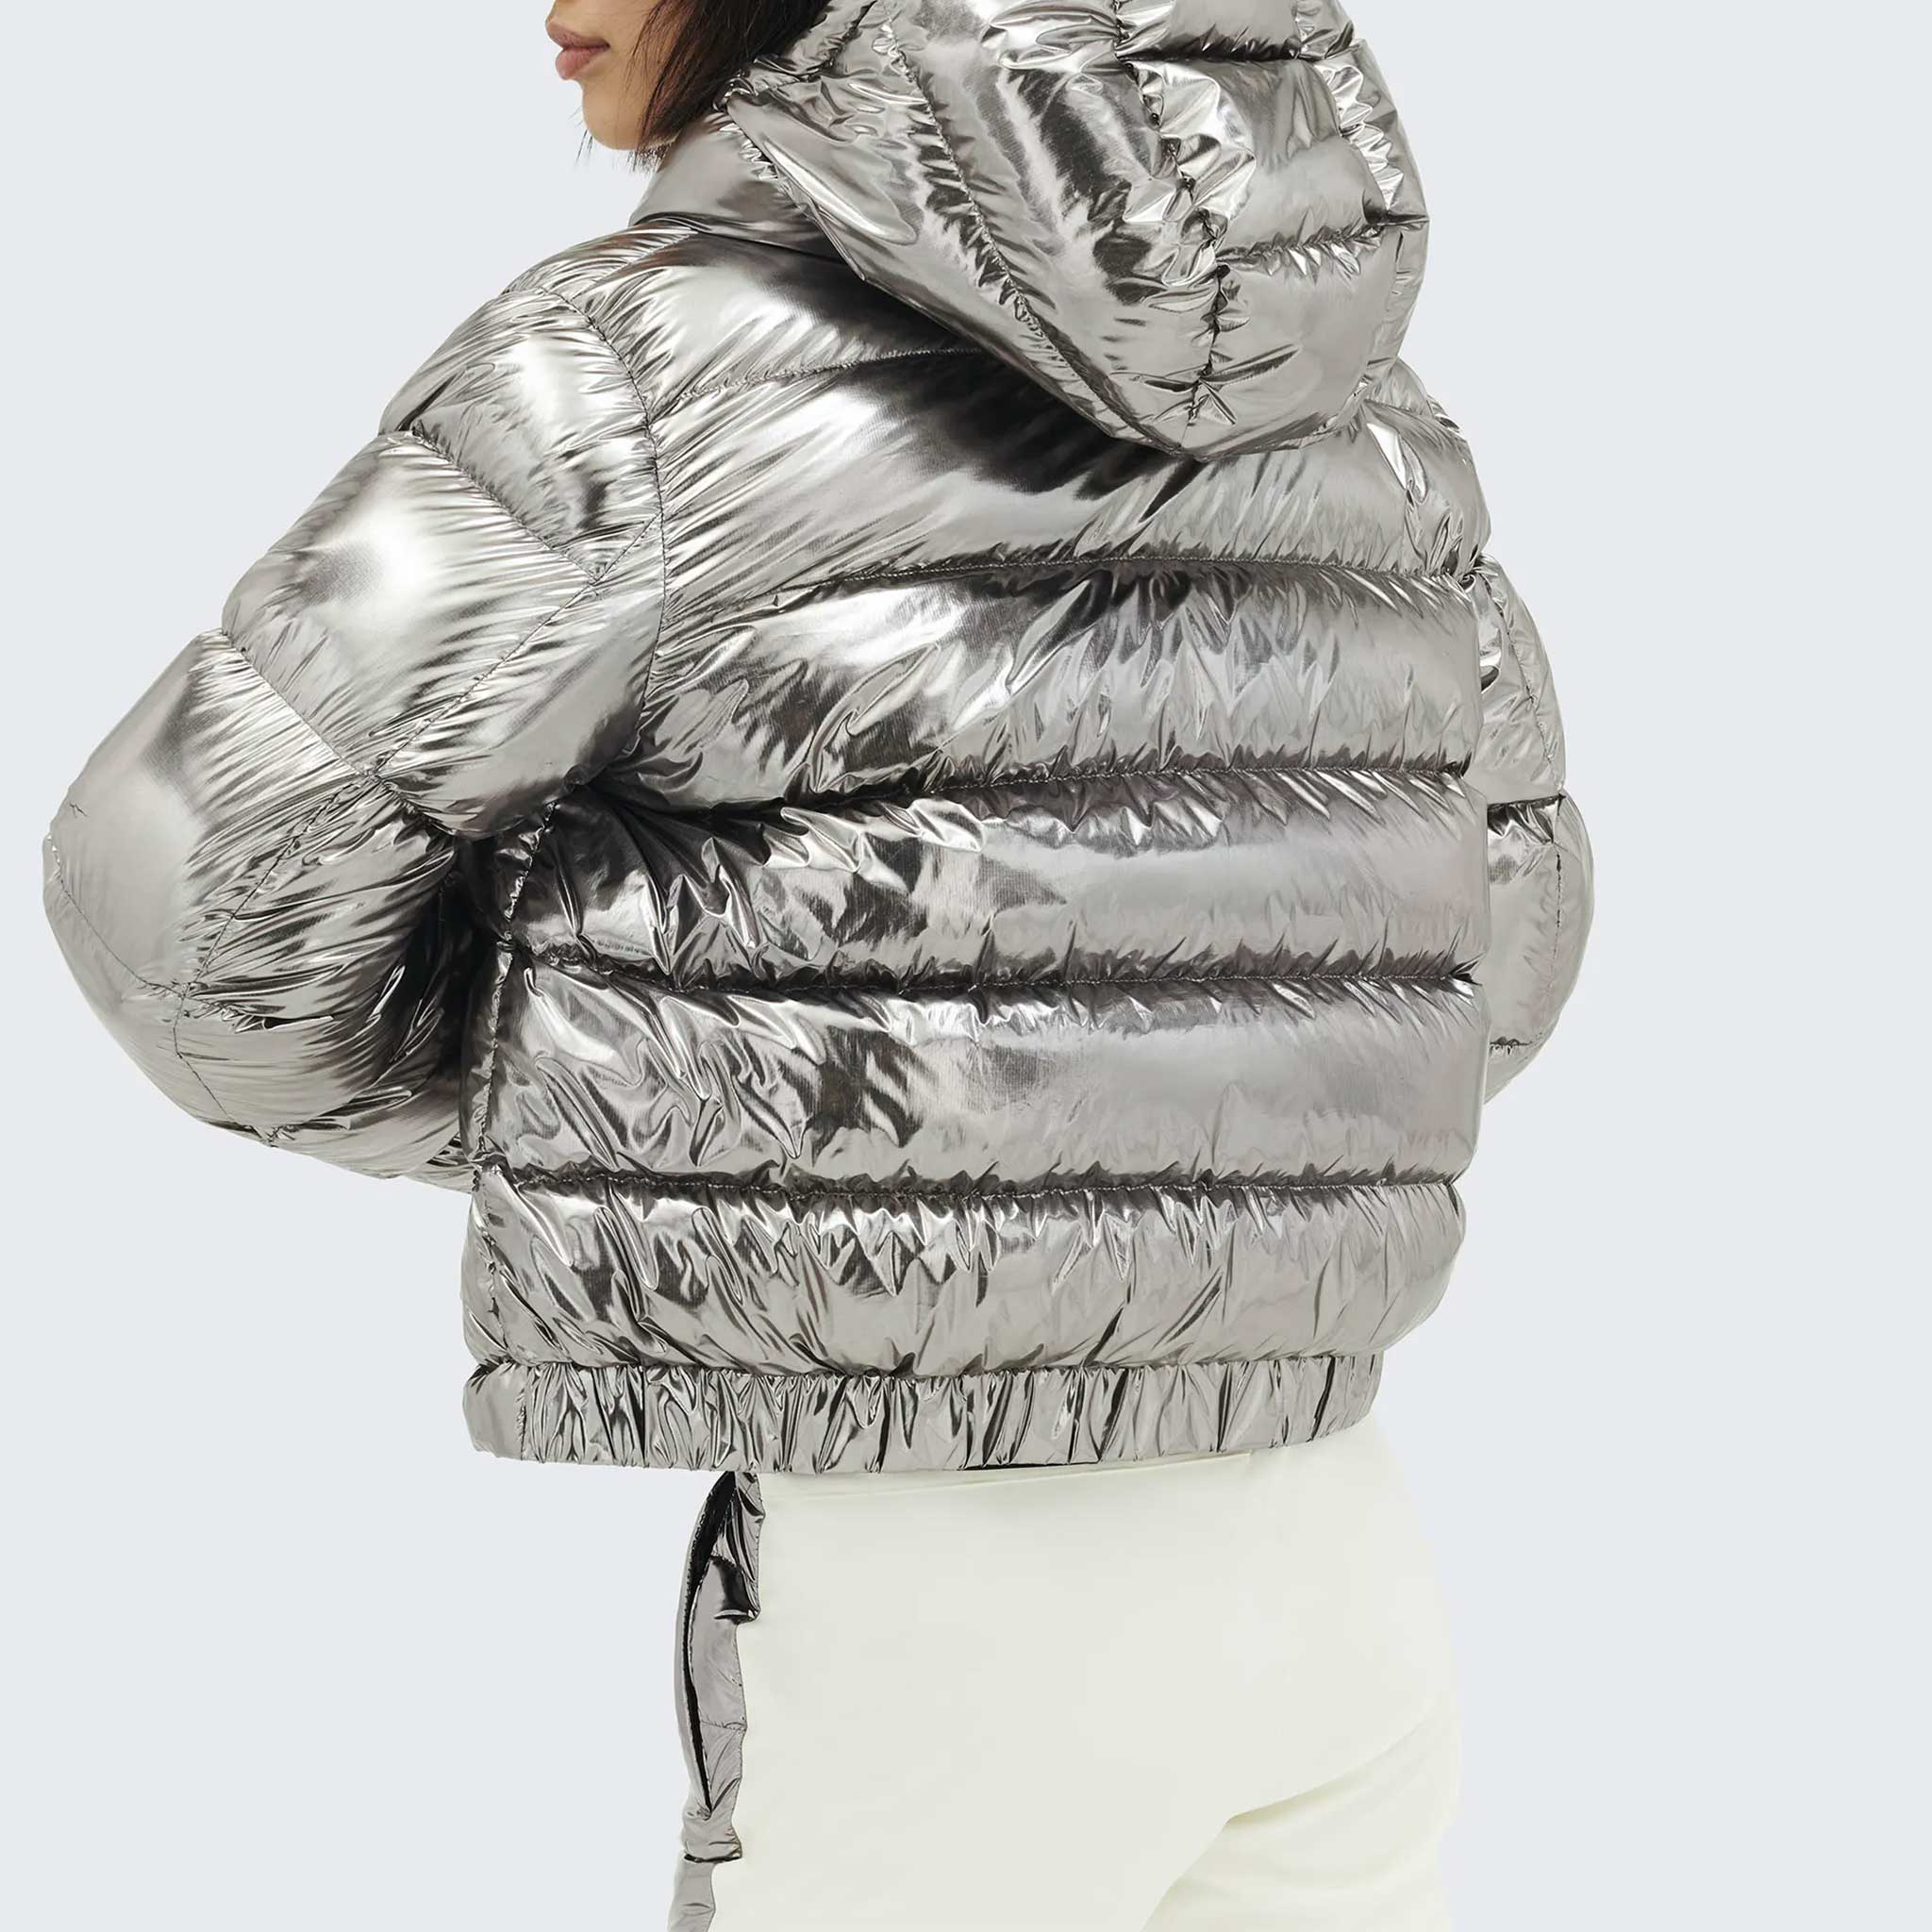 Polar Flare II Jacket in Silver Foil